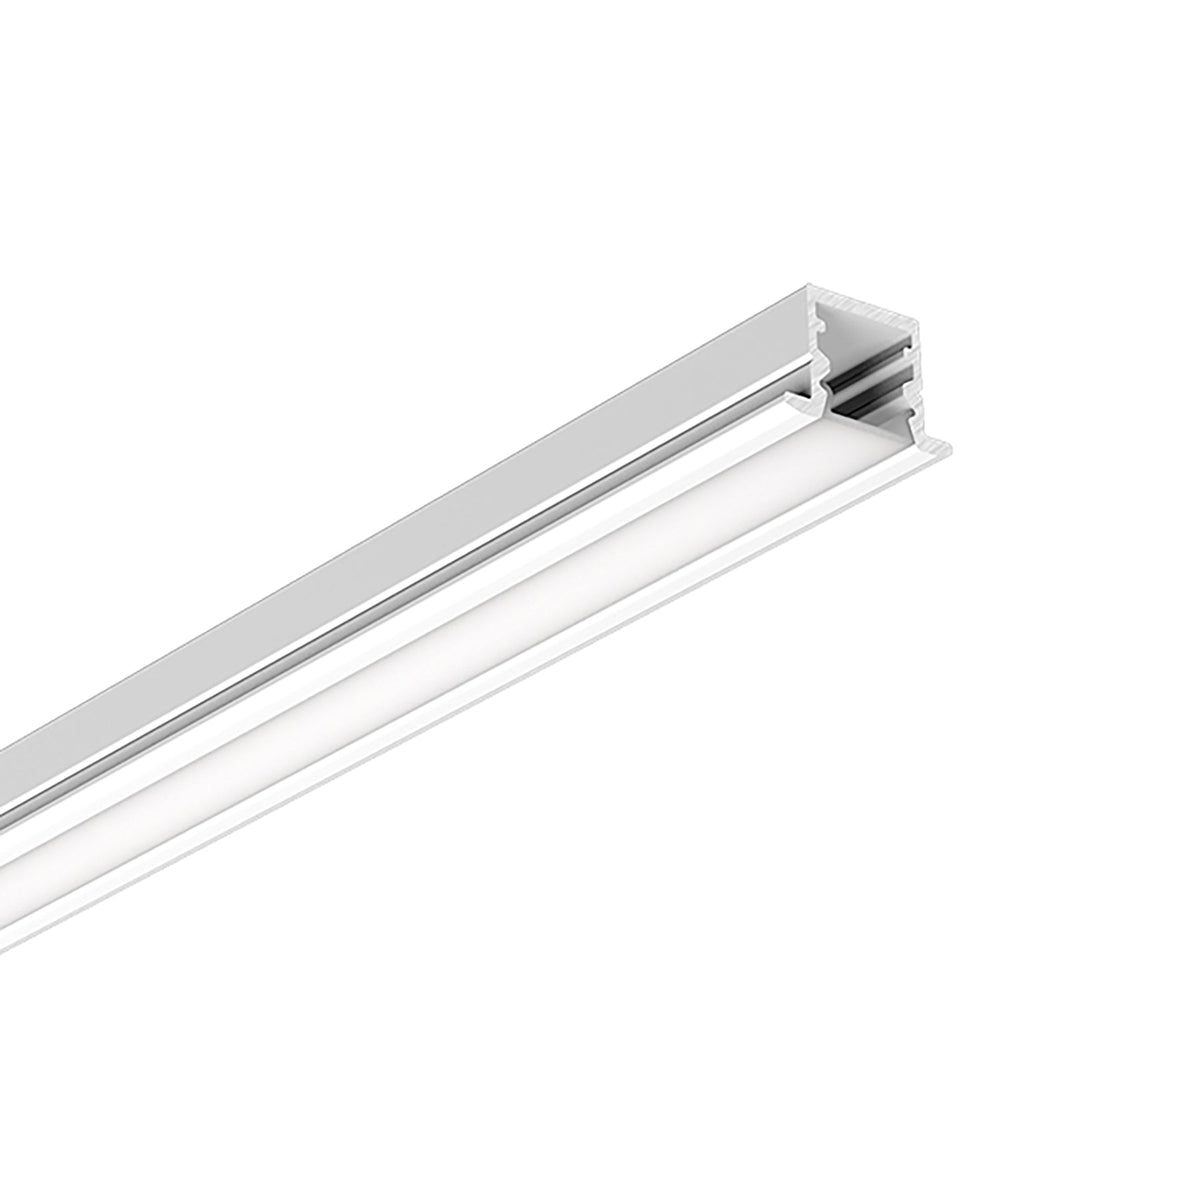 G.W.S. LED LED Aluminium Profile Recessed 516-Y1510